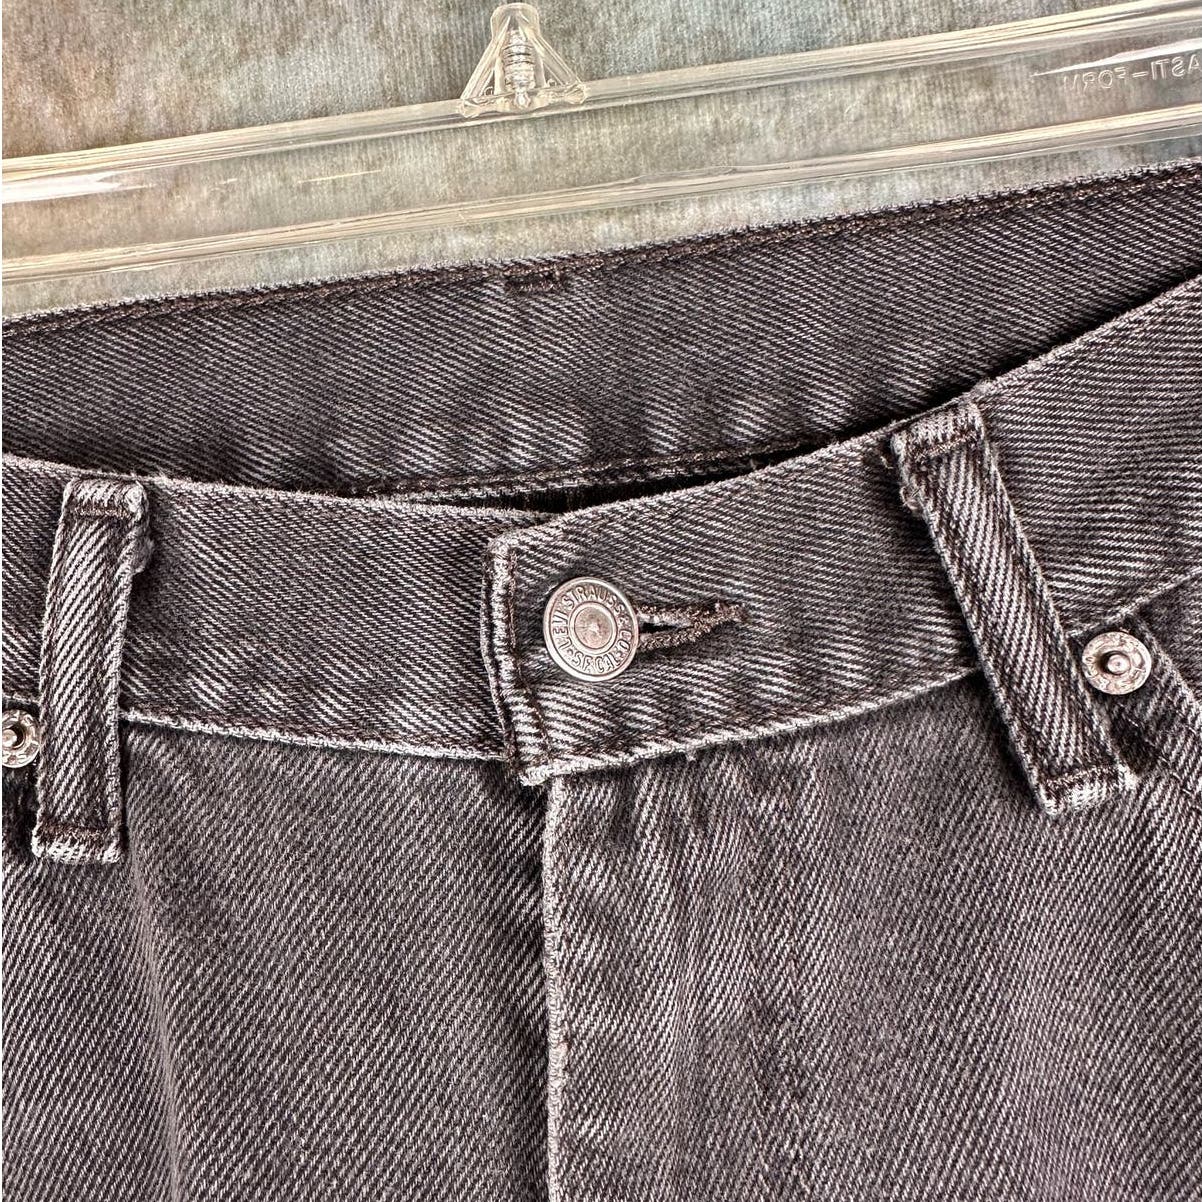 Vintage Levis 505 Black Denim Jeans 36x30